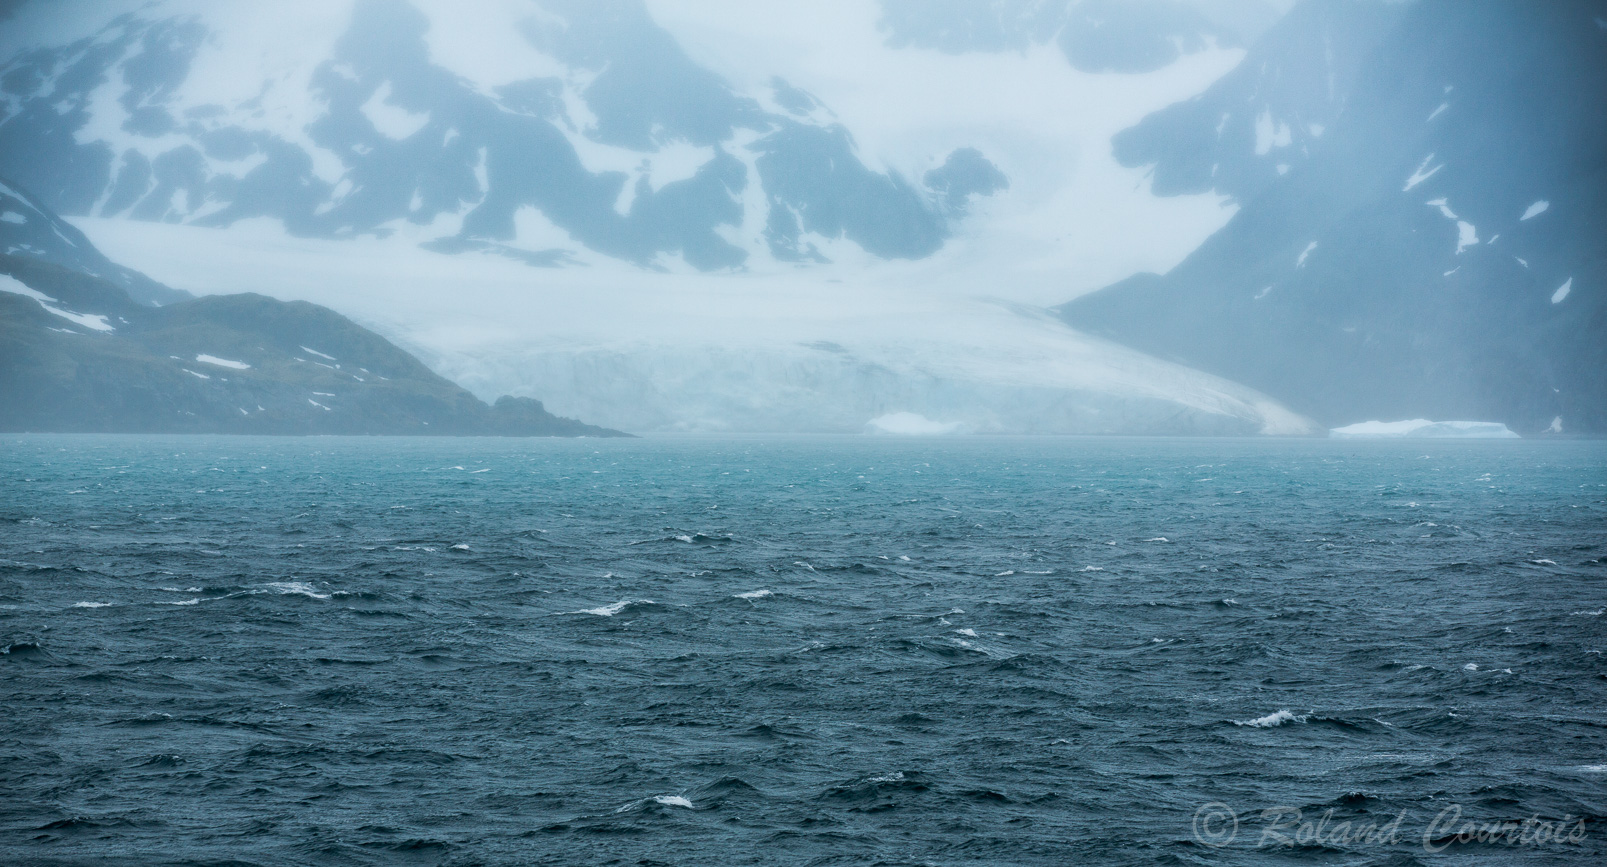 Drygalski Fjord : au fond du fjord, un grand glacier dans la brume